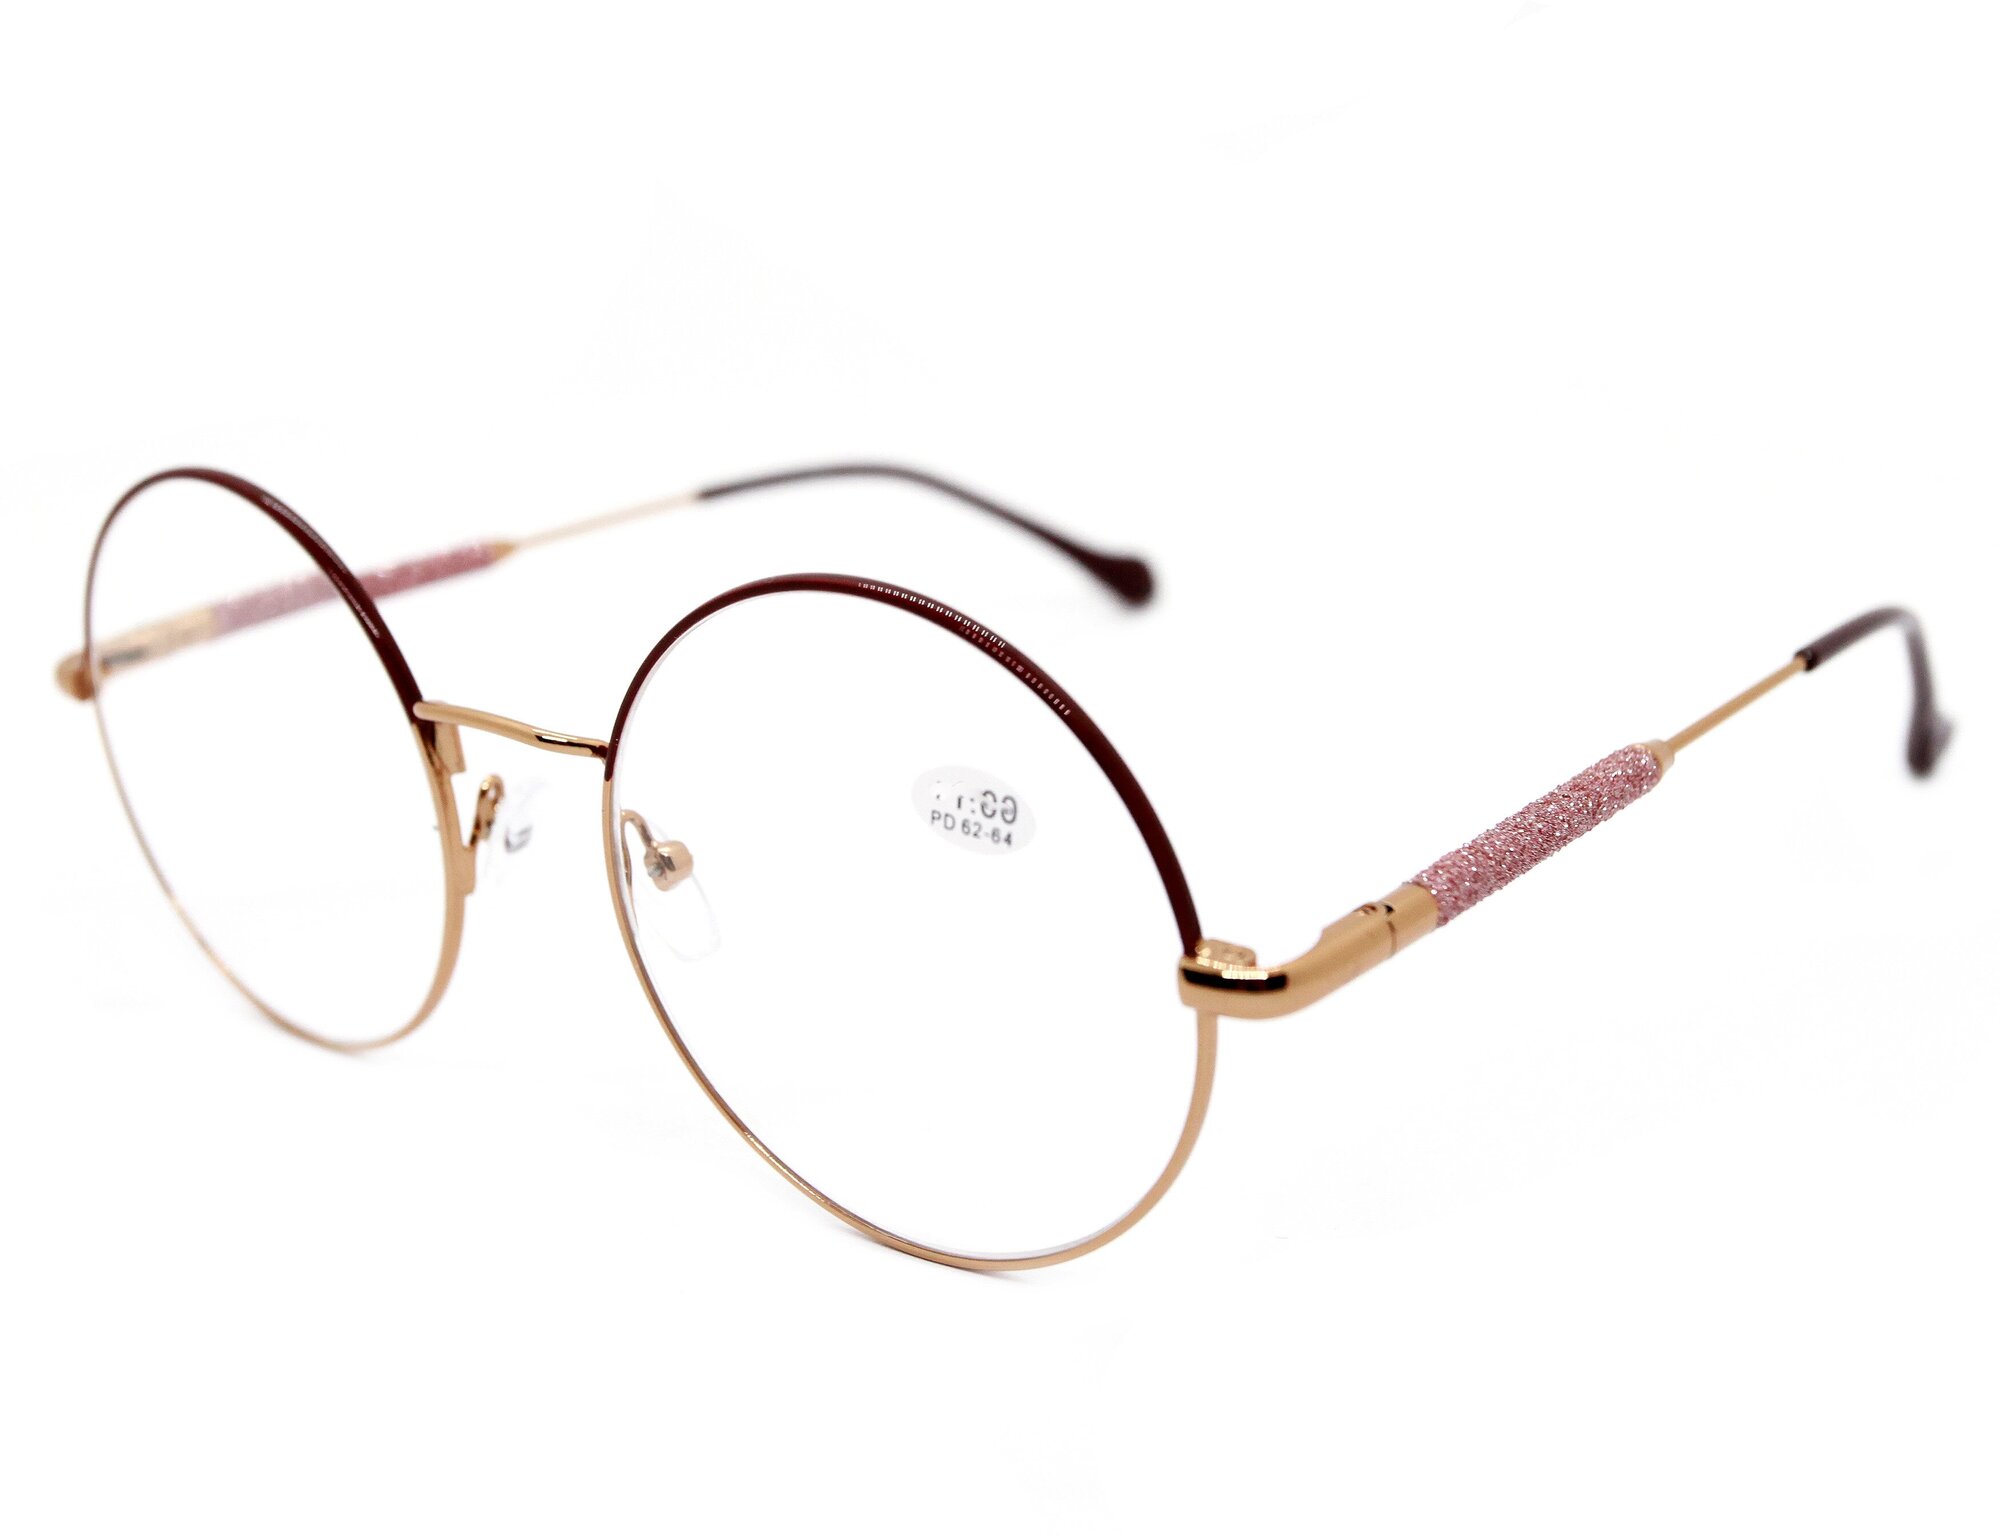 Круглые очки для чтения женские (+1.25) GLODIATR 1908-C3, без футлярацвет бордовый, РЦ 62-64